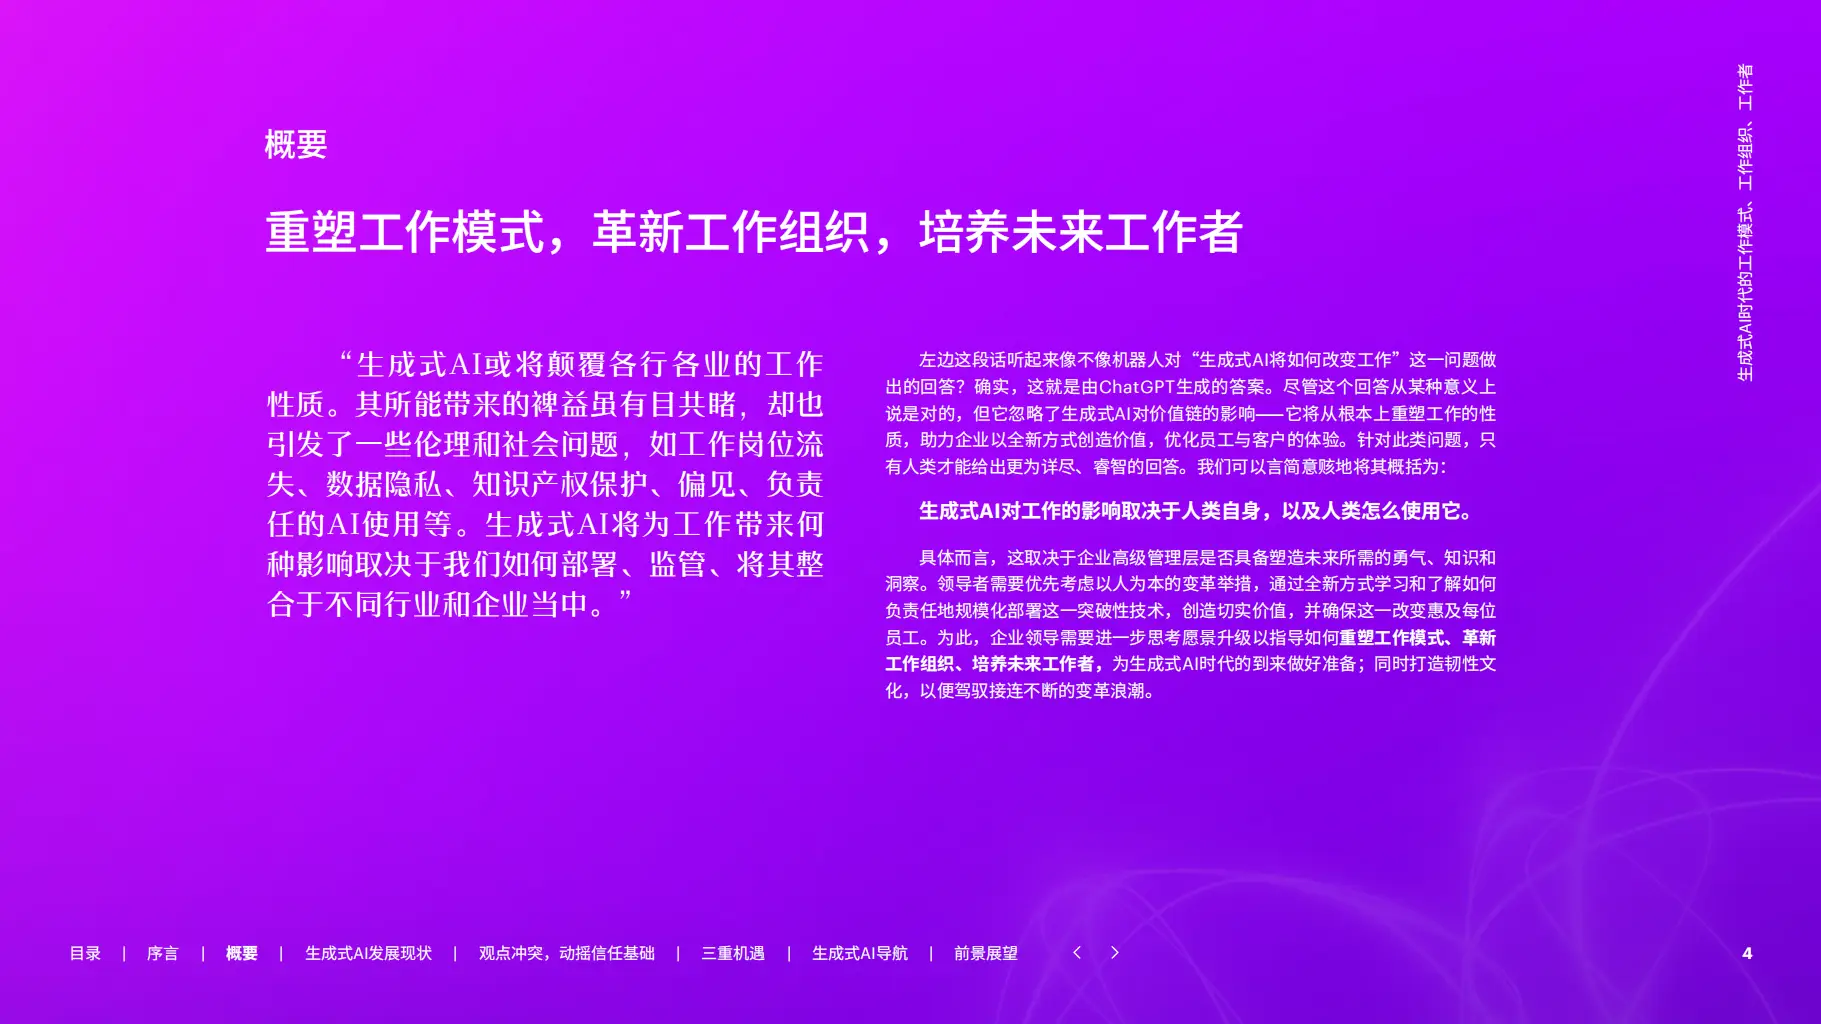 河南新乡 5G 网络全面商用，对社会发展影响深远  第6张